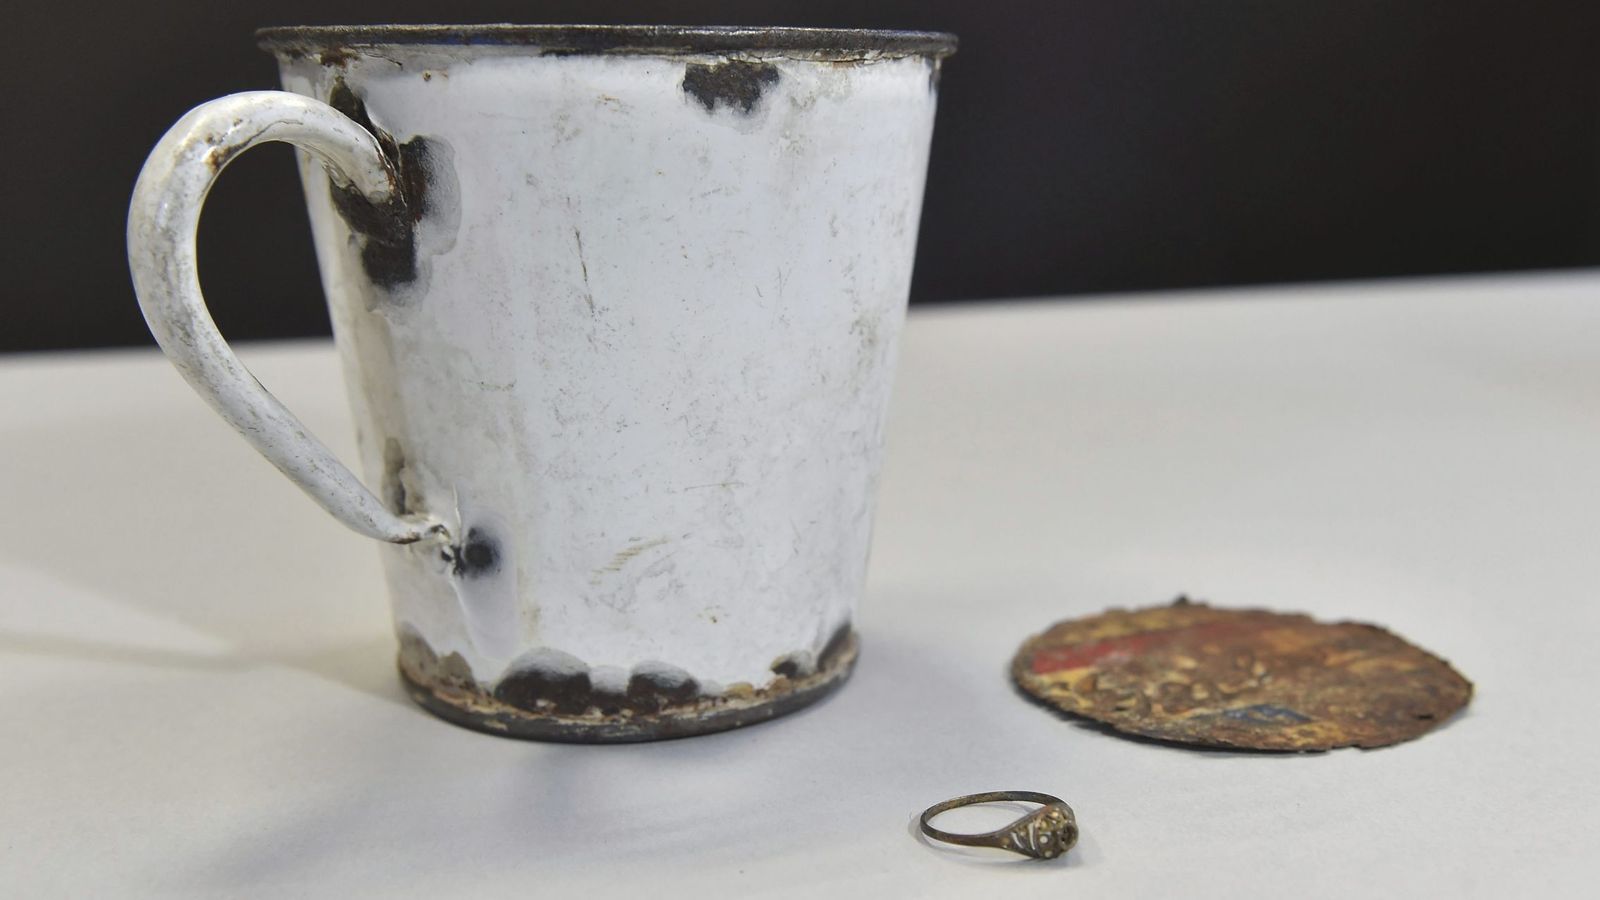 Foto: La taza esmaltada con doble fondo en la que se ha descubierto el 'tesoro' EFE)